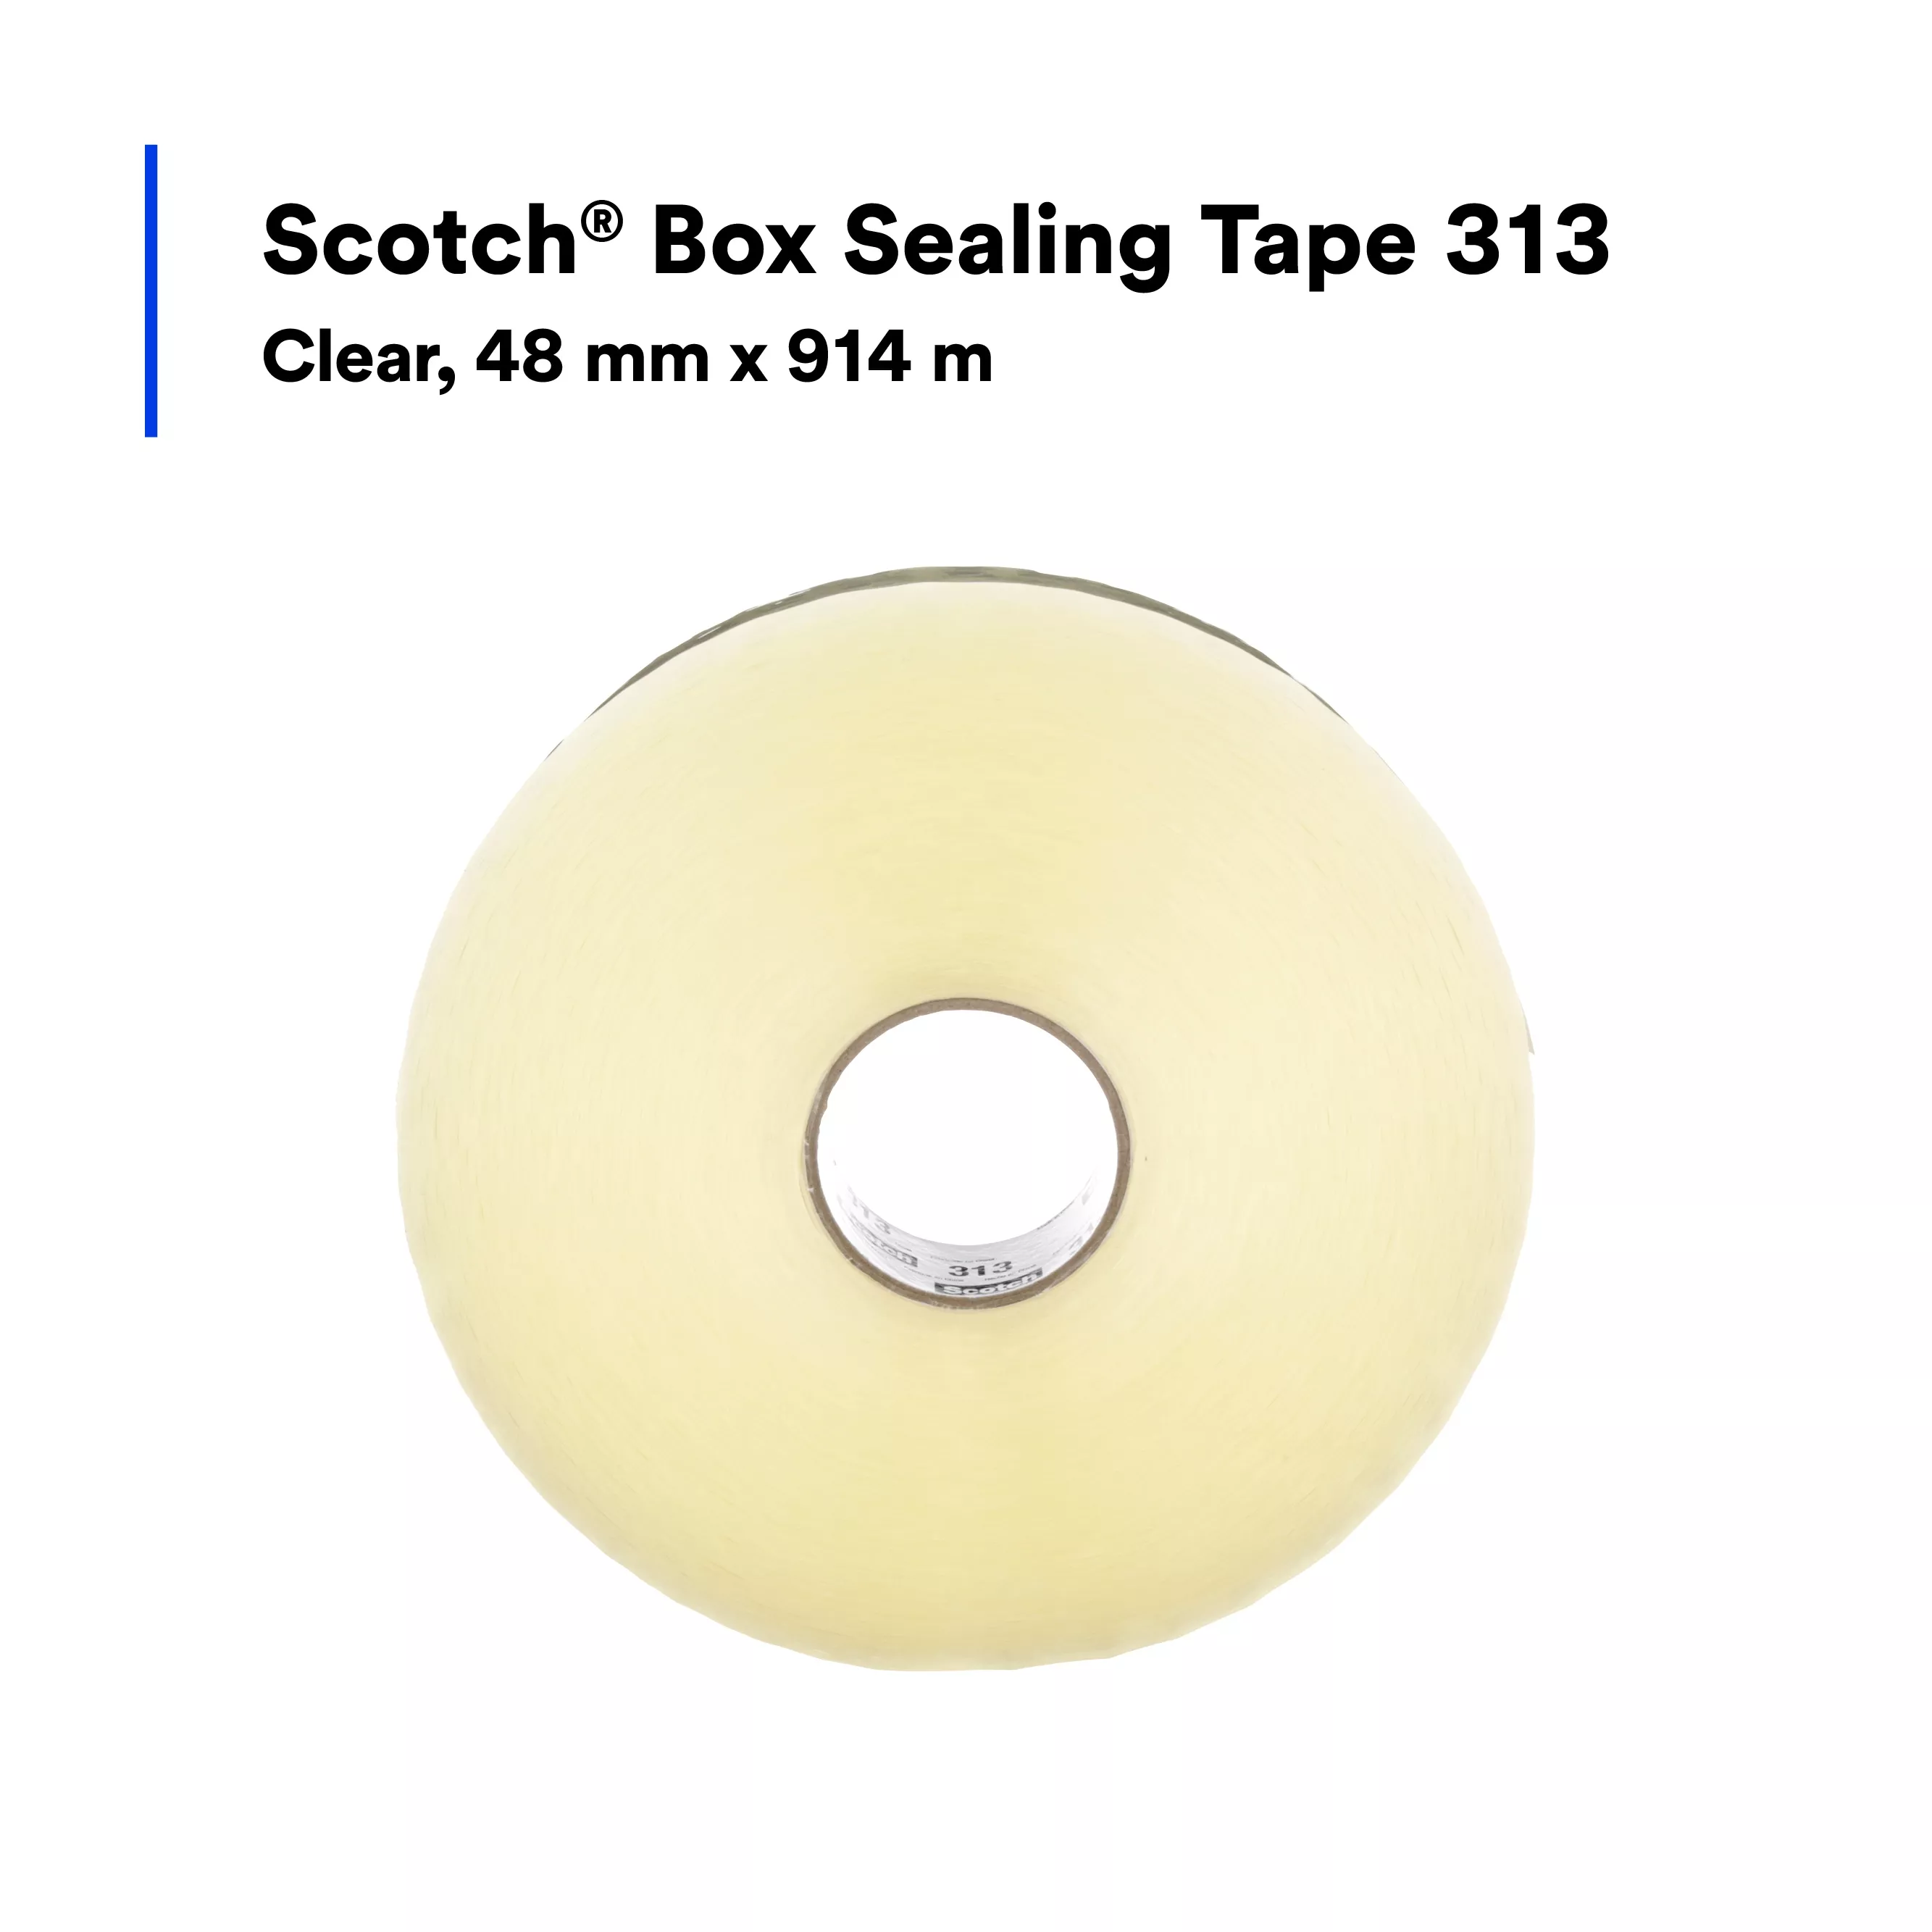 SKU 7100240704 | Scotch® Box Sealing Tape 313